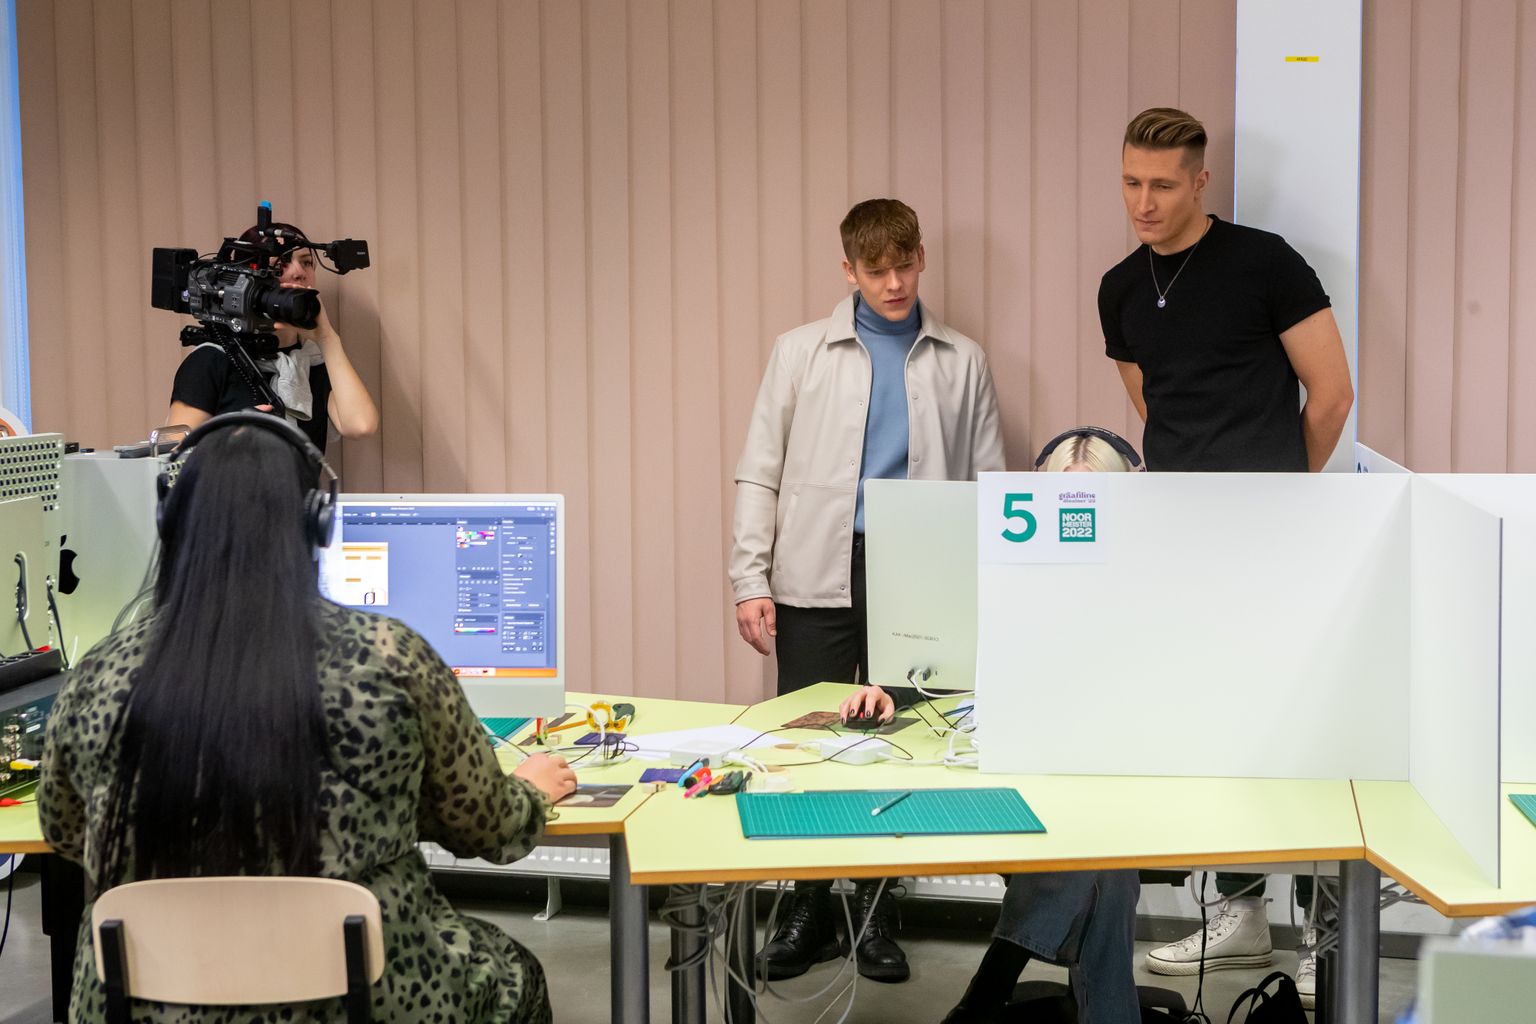 Kolmas saade, kus võistlevad graafilised disainerid, on filmitud Kuressaare ametikoolis. Andrei Zevakin ja Karl-Erik Taukar jälgivad, millega võistlejad tegelevad.